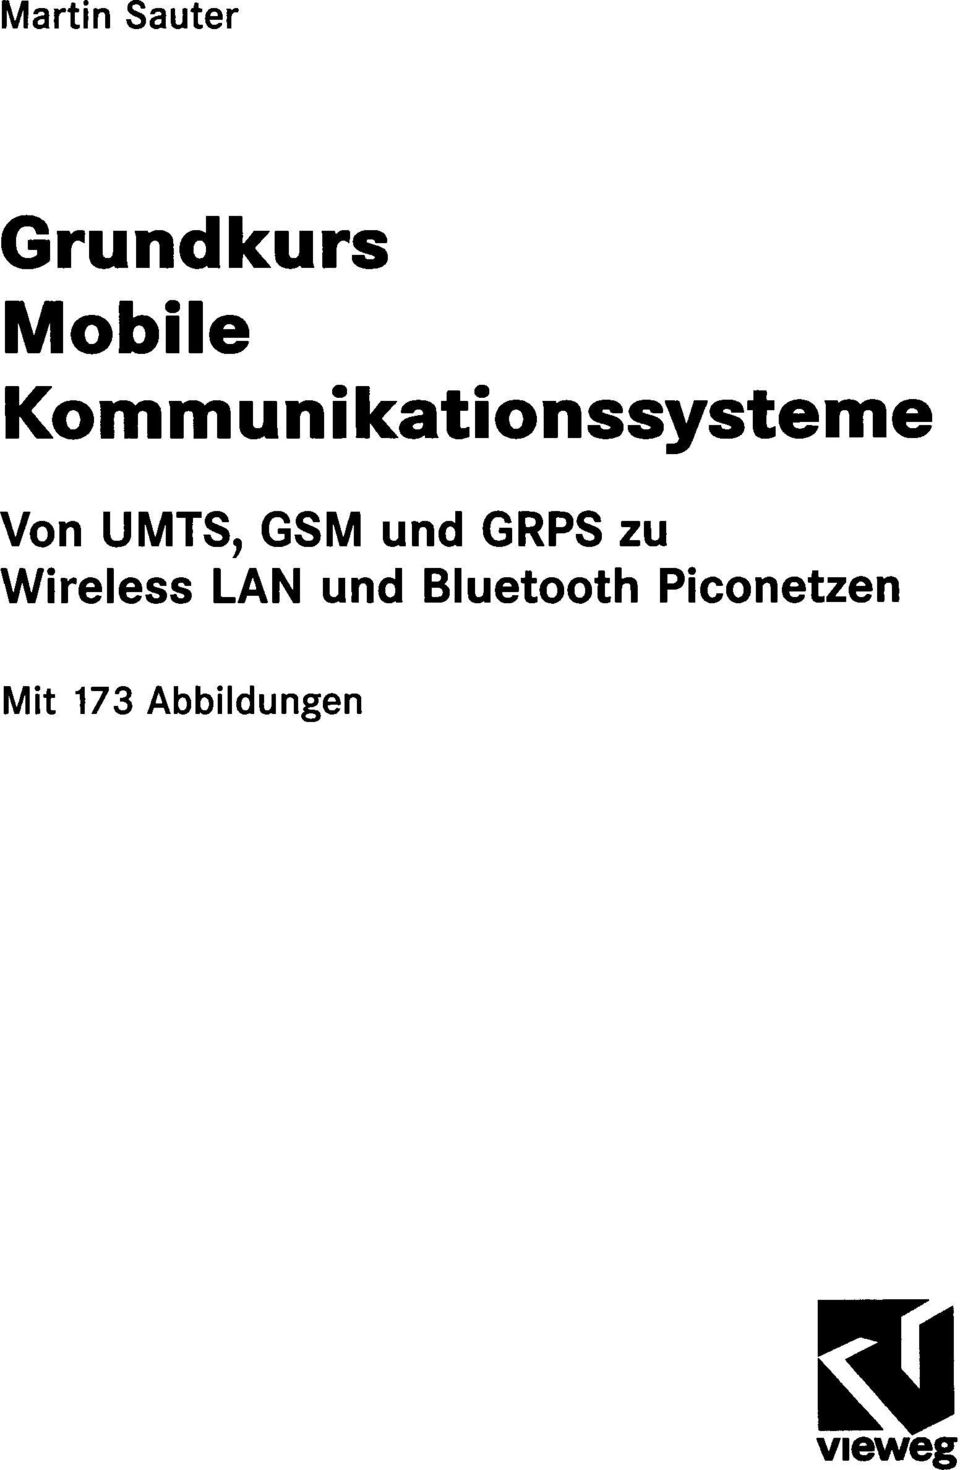 UMTS, GSM und GRPS zu Wireless LAN